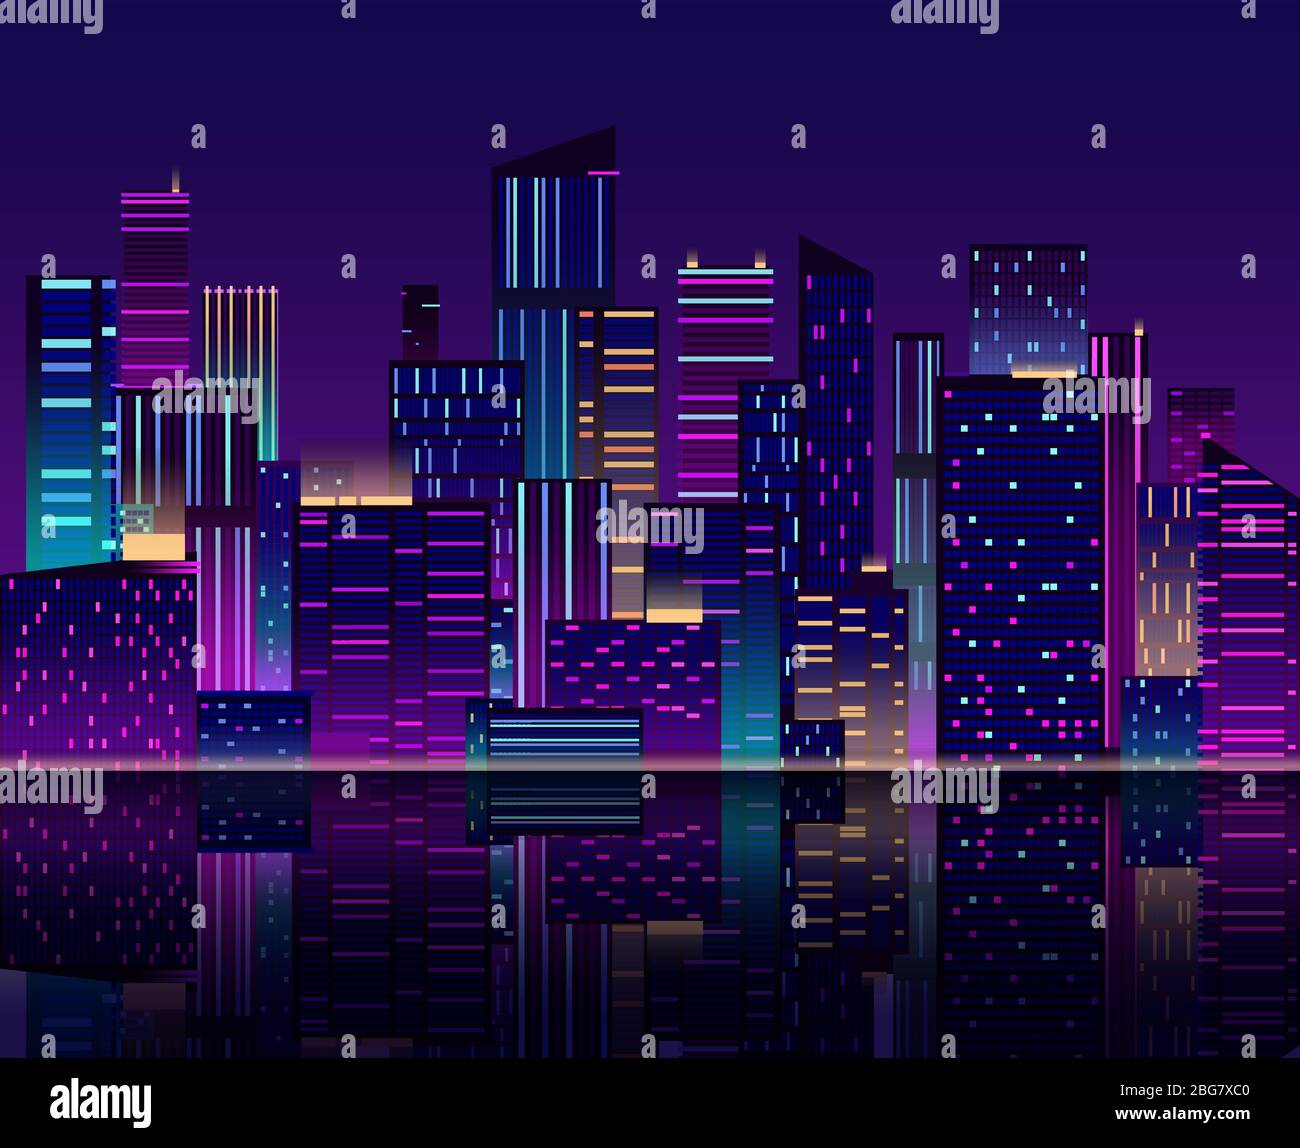 Skyline bei Nacht. Wolkenkratzer mit Neonlicht. Stadtbild mit Gebäuden. 80er Jahre Retro Vektor Hintergrund. Panorama-Skyline der Stadt, Architektur Stock Vektor